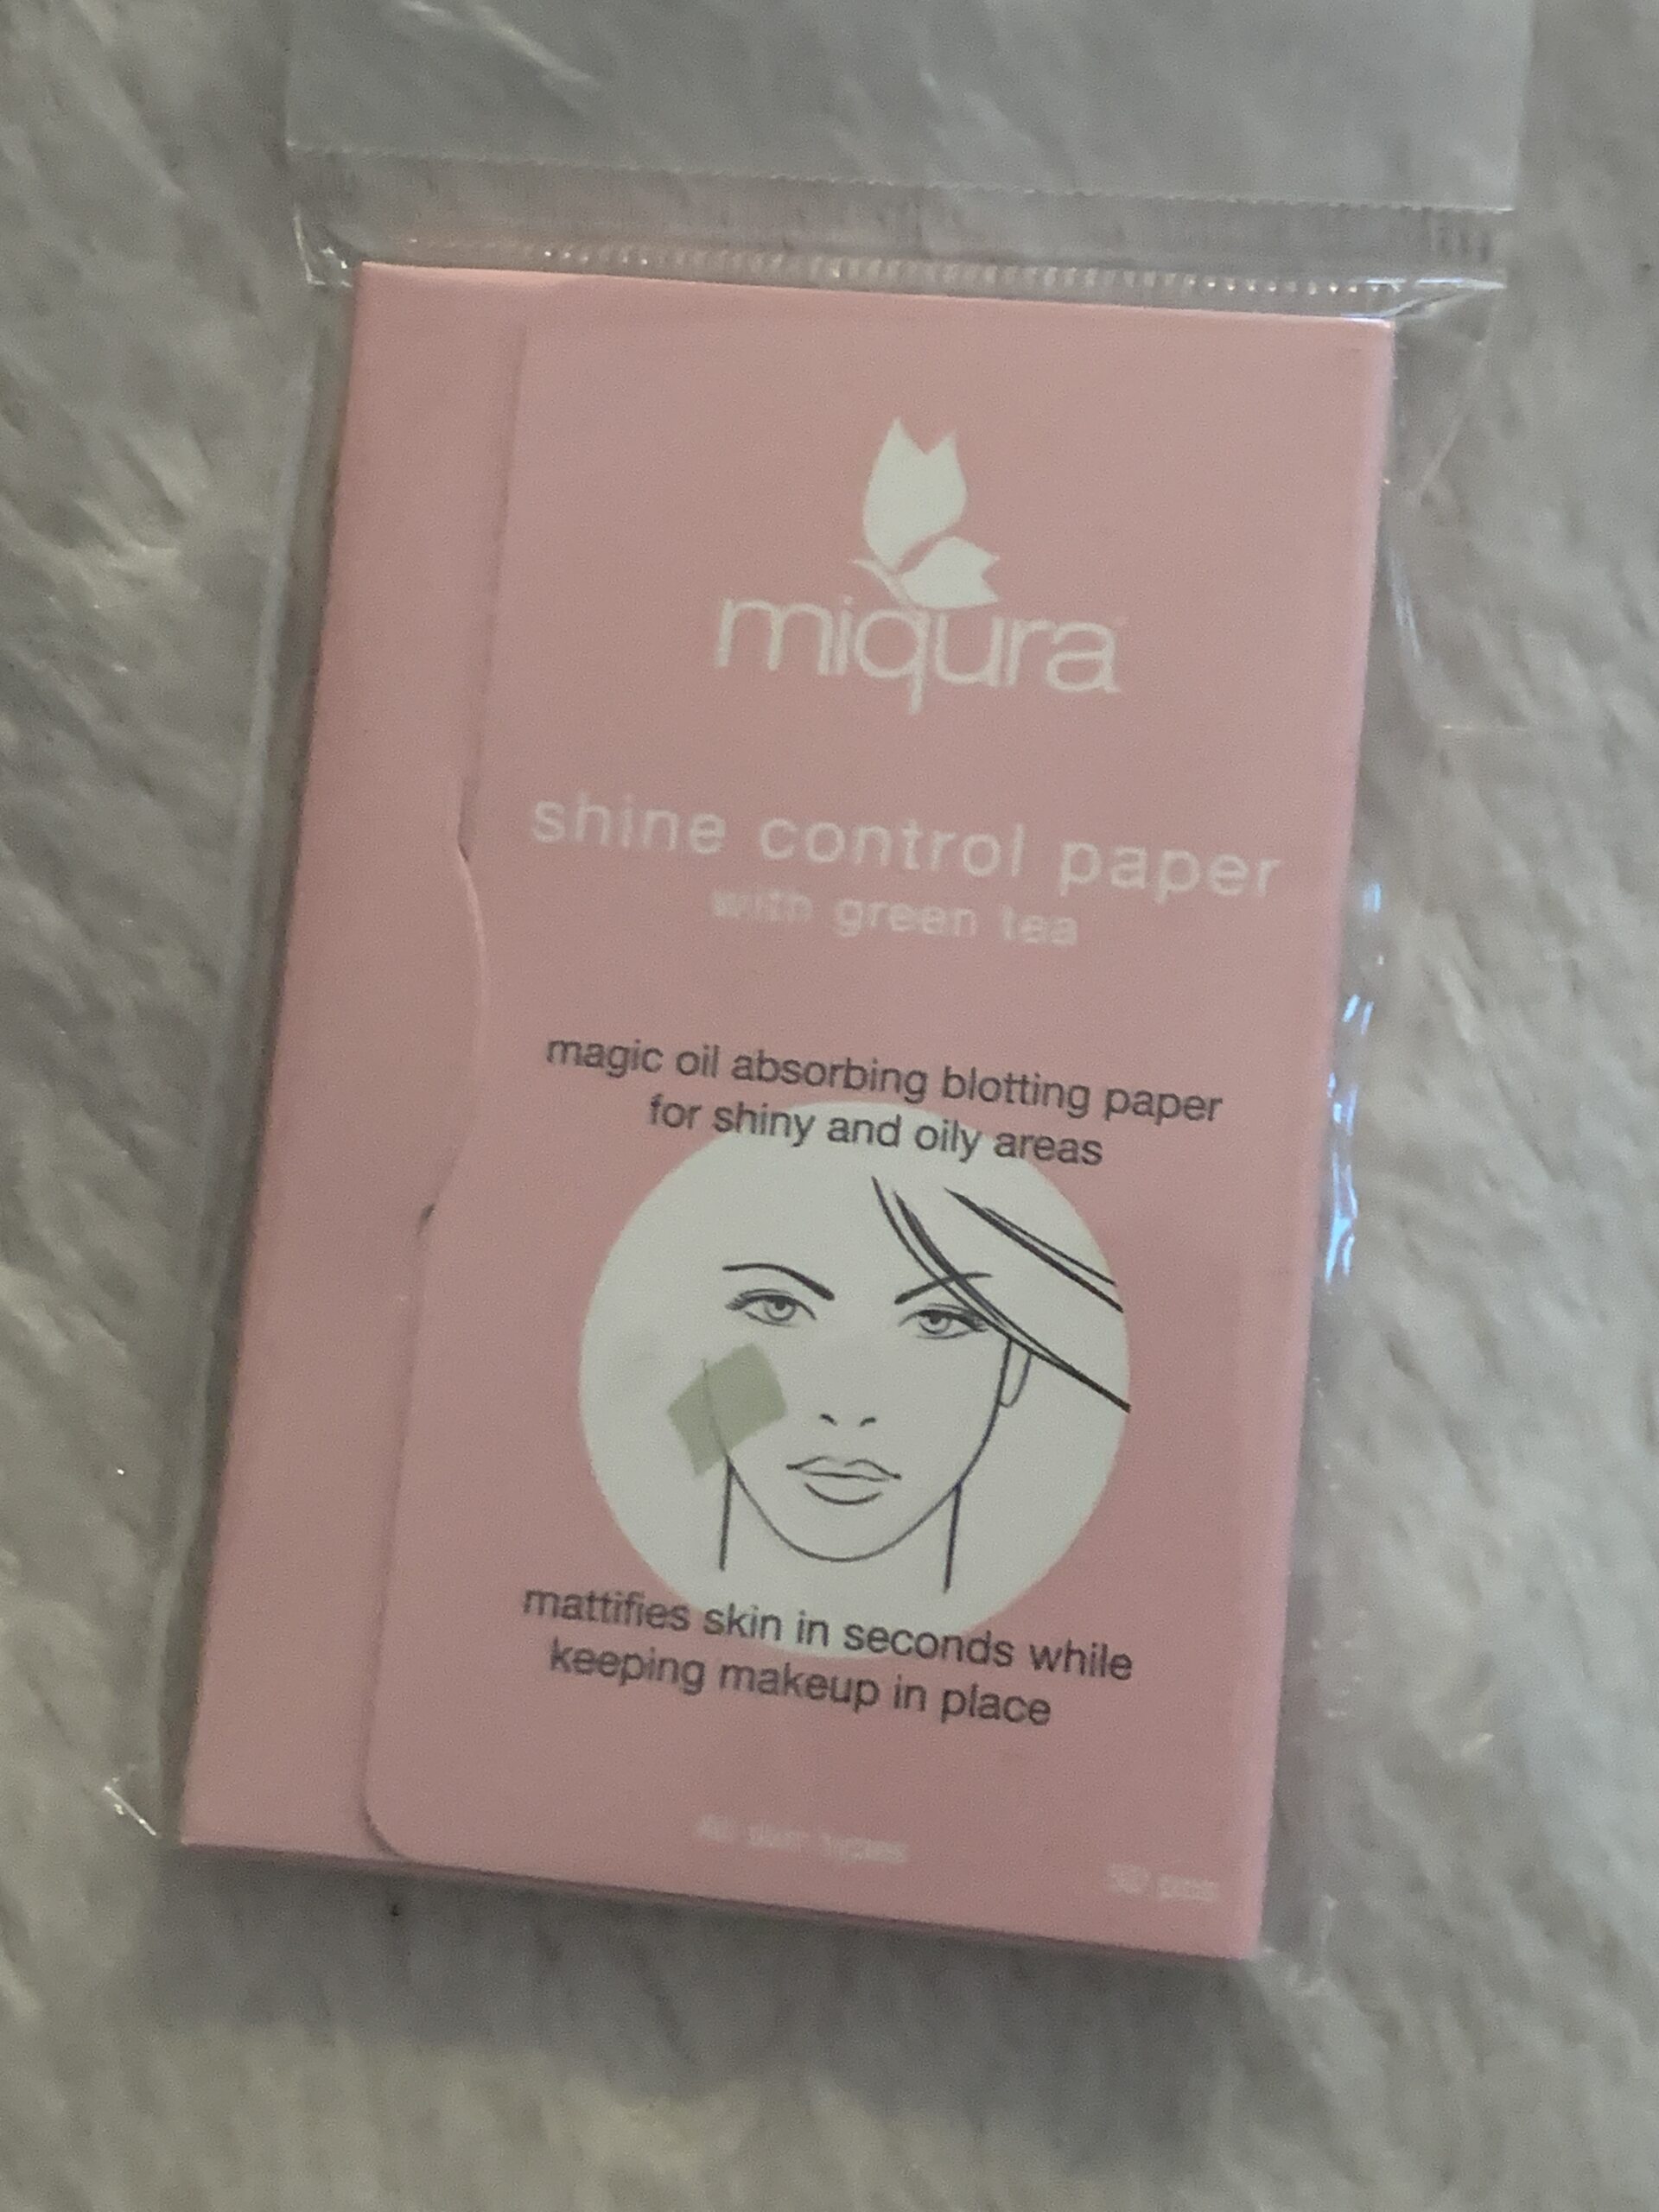 Miqura Shine control paper